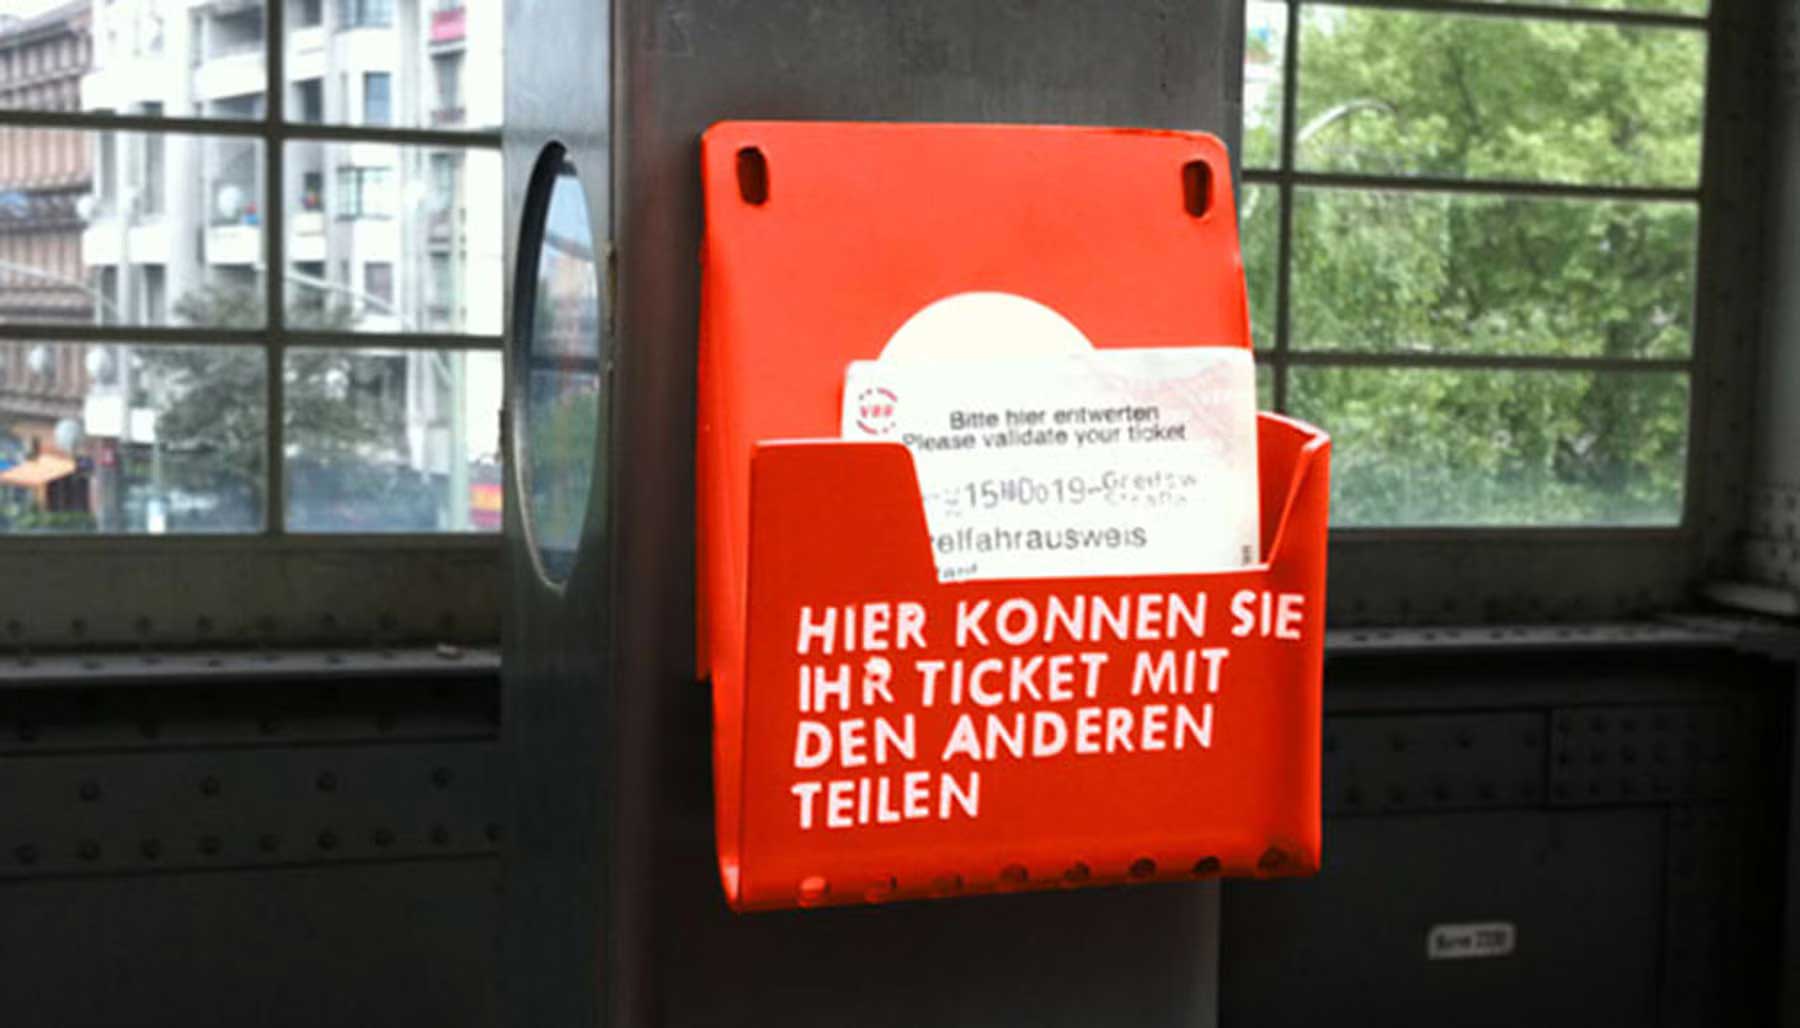 Münz-Rutsche, Ticket-Ablage & weitere urbane Lifehacks